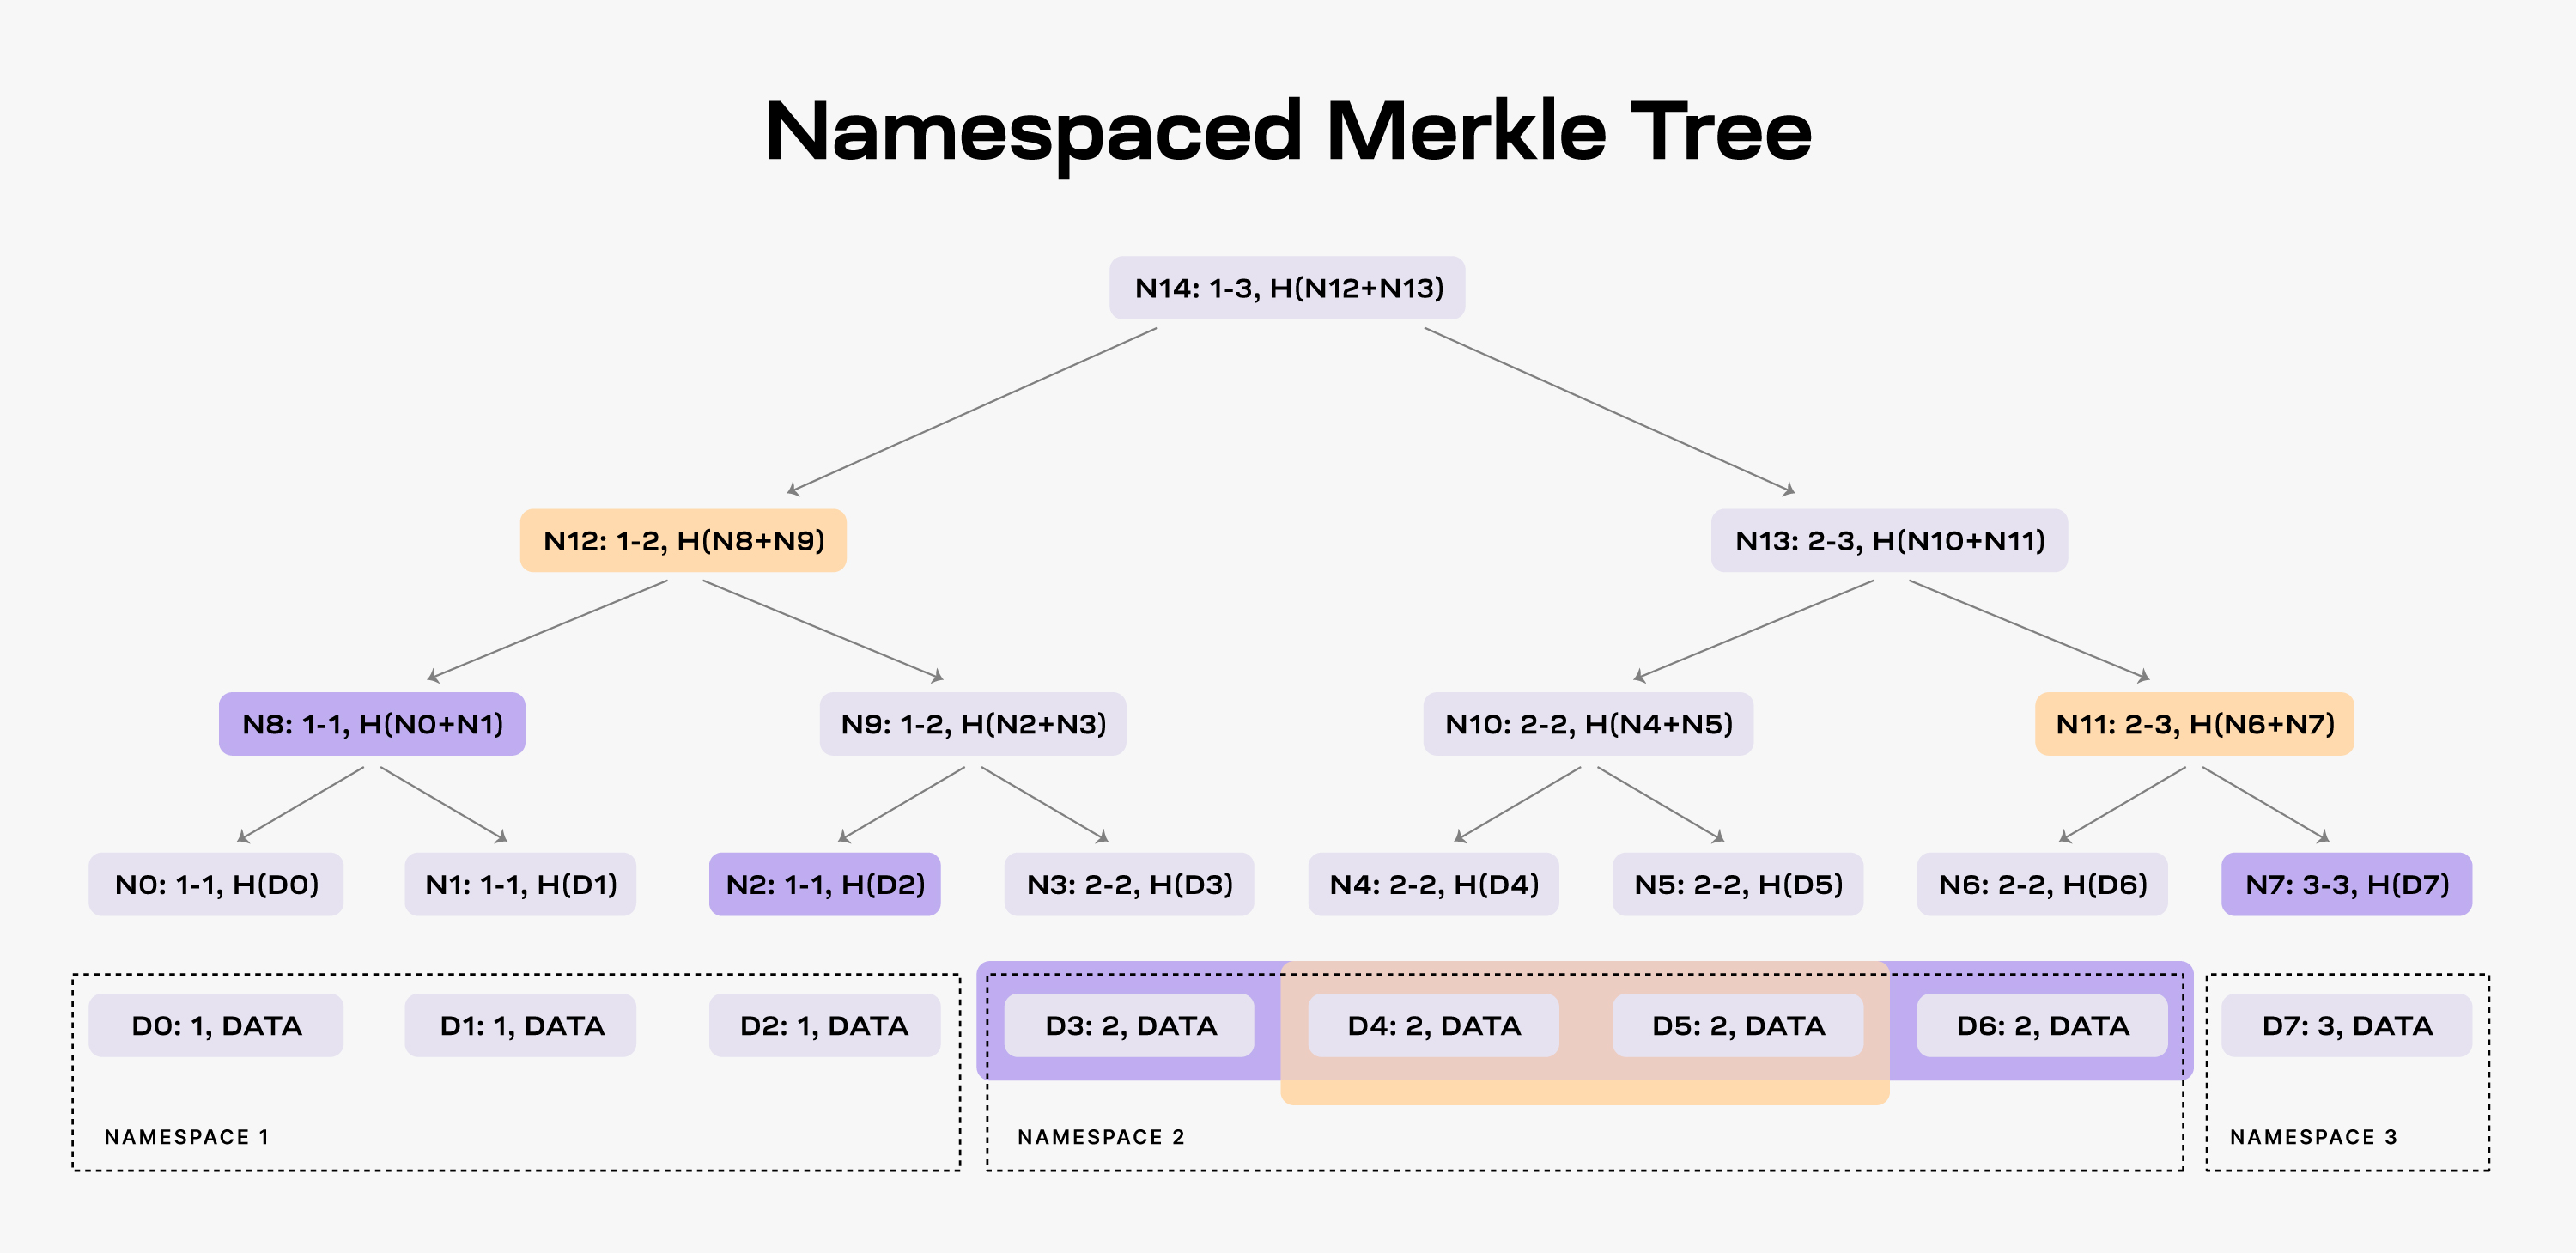 Namespaced Merkle Tree